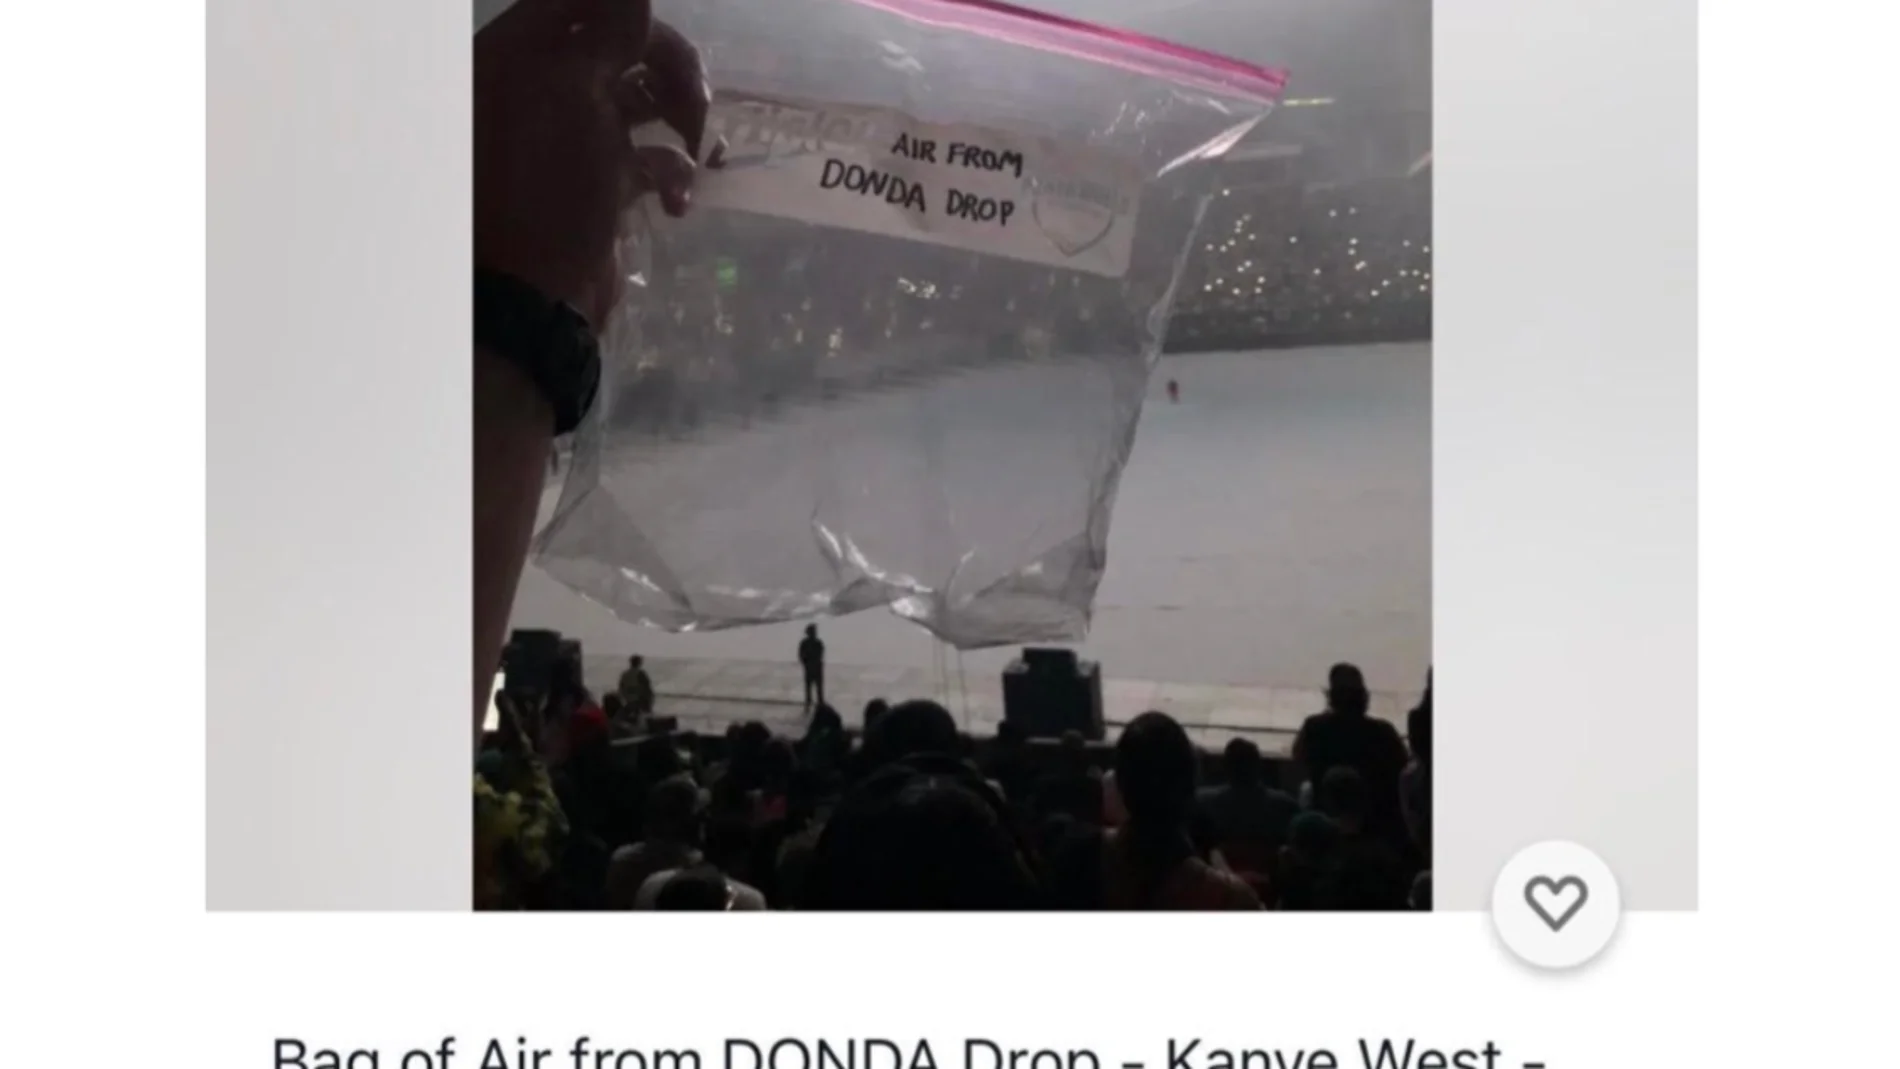 Subastan una bolsa de plástico con aire del concierto de Kanye West